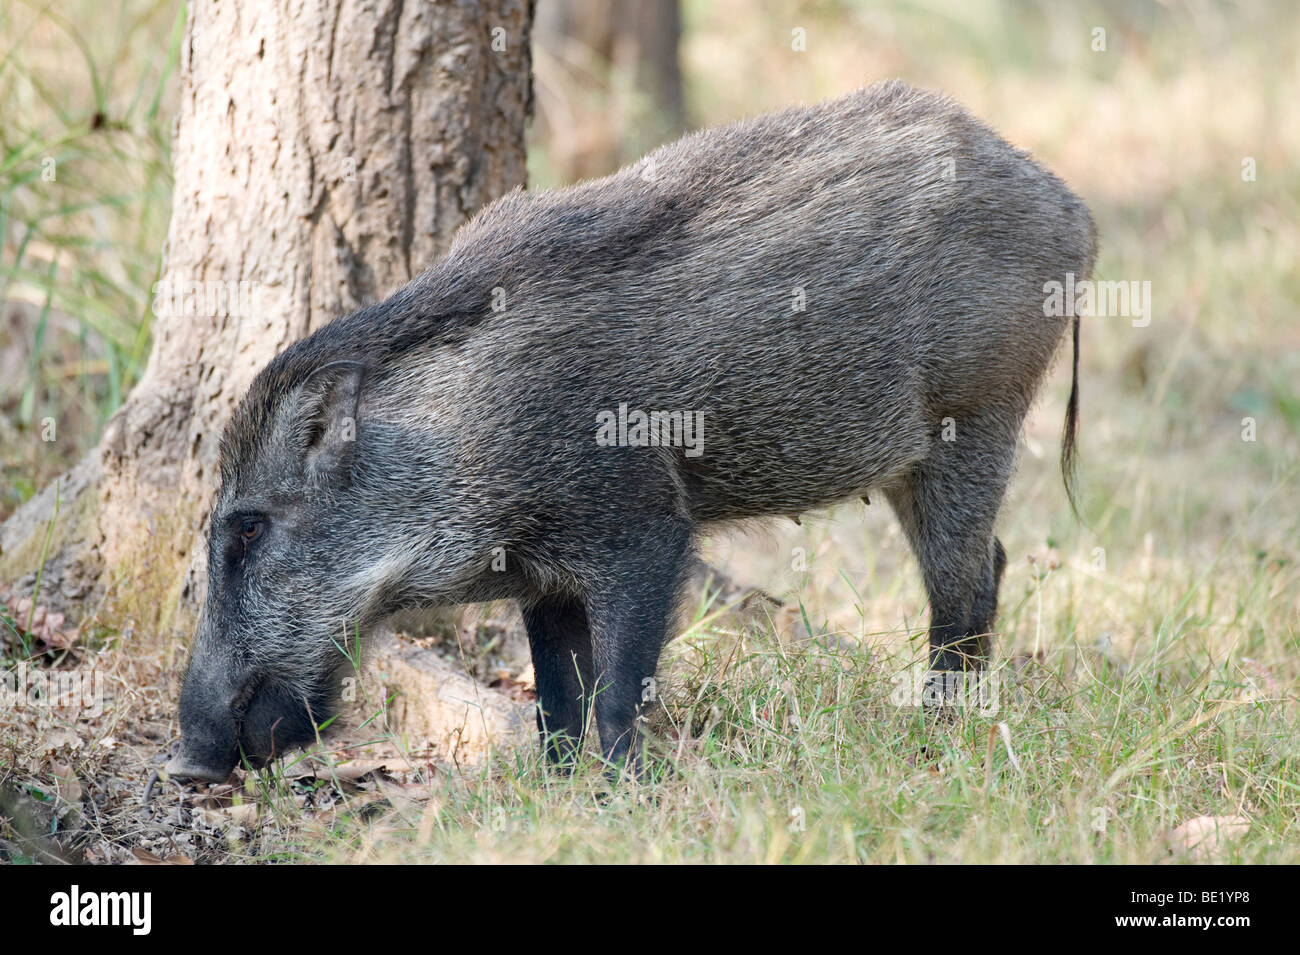 Wildschwein Sus Scrofa Bandhavgarh National Park Wald Schwein weiblich Stockfoto